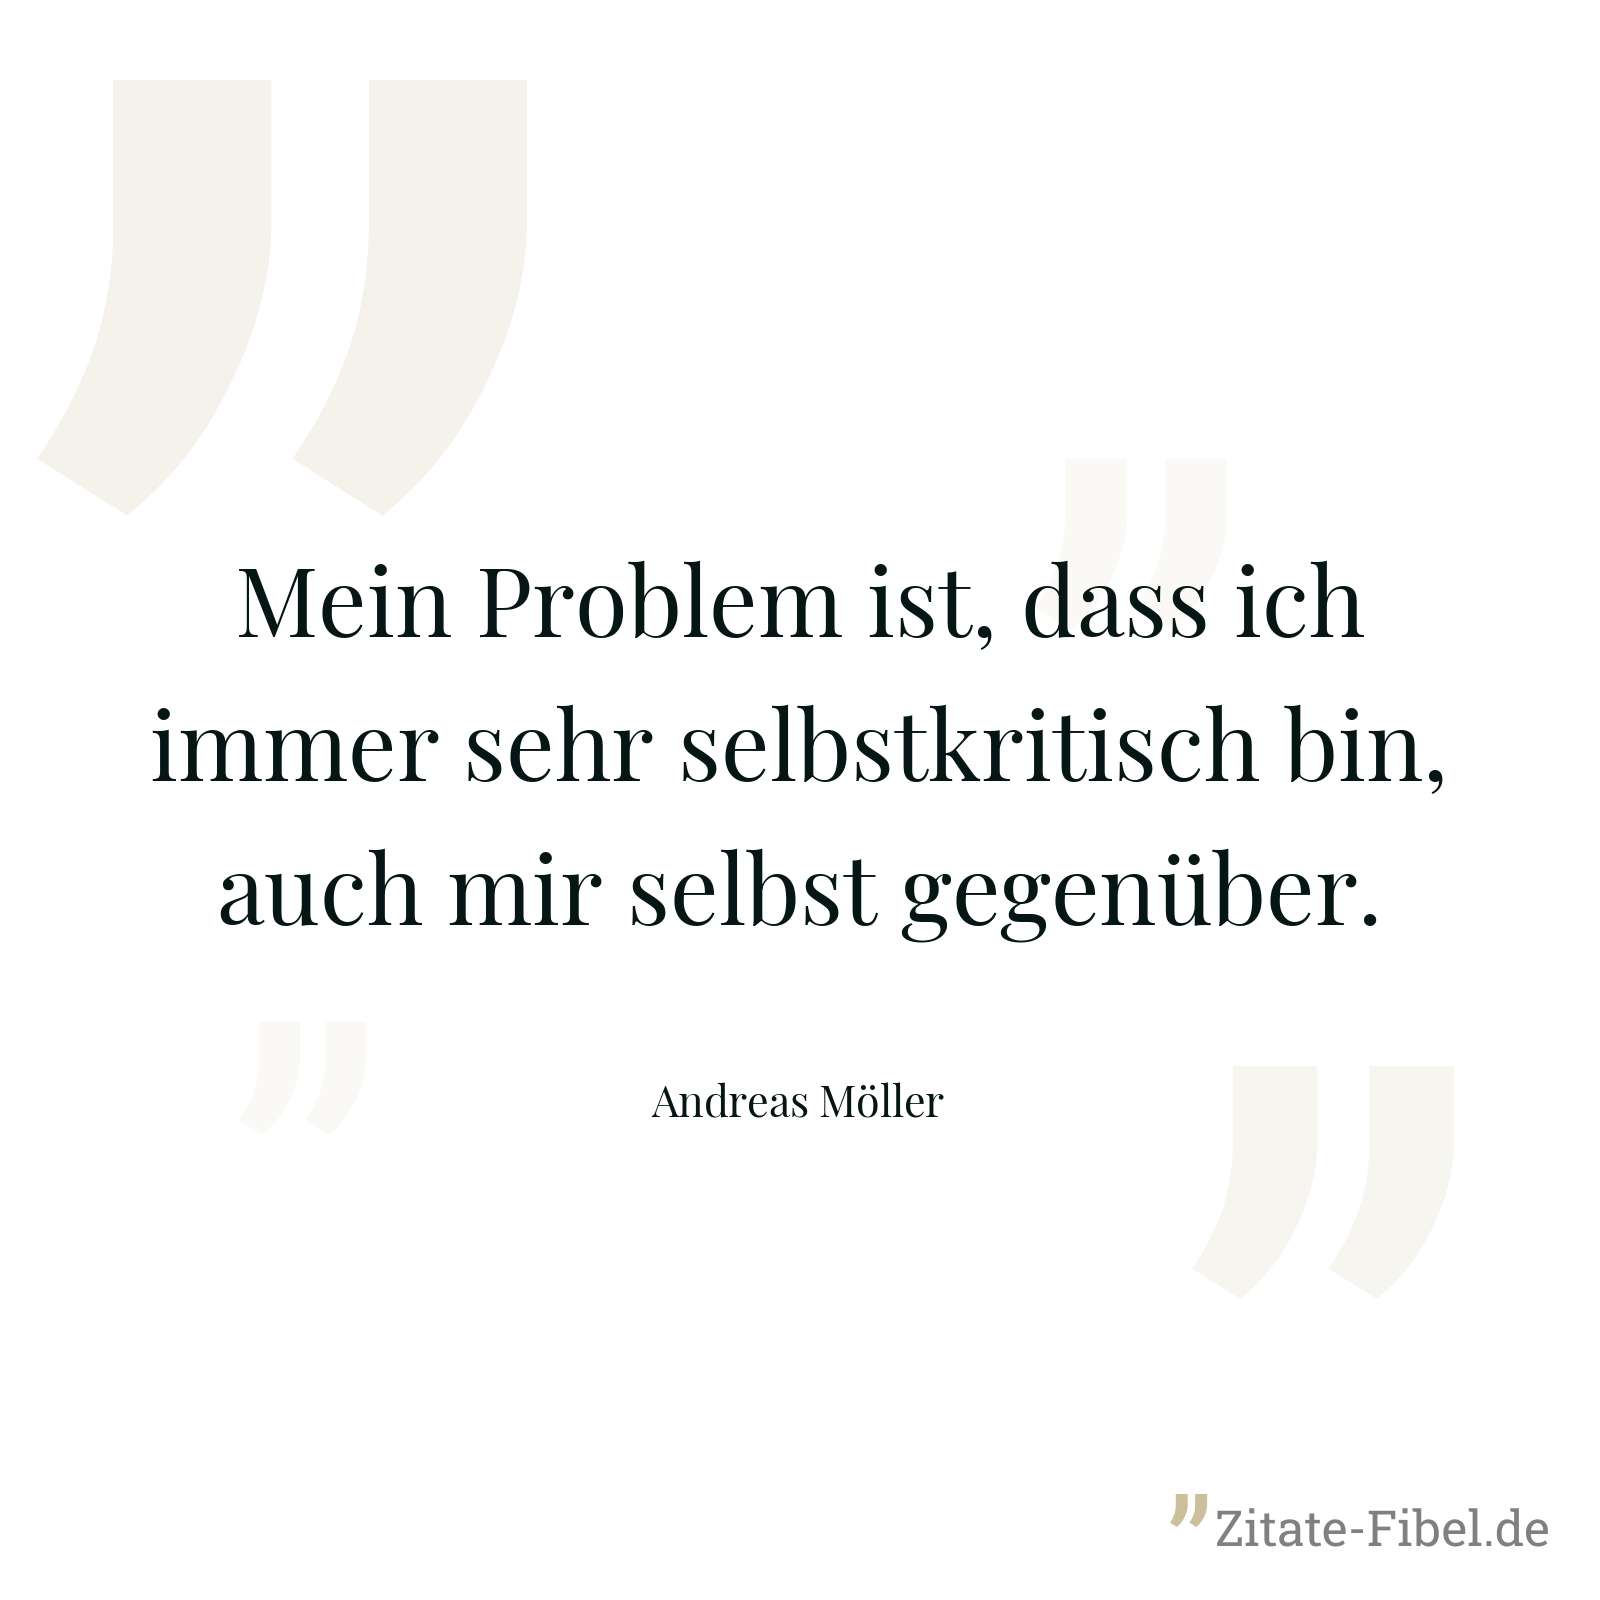 Mein Problem ist, dass ich immer sehr selbstkritisch bin, auch mir selbst gegenüber. - Andreas Möller